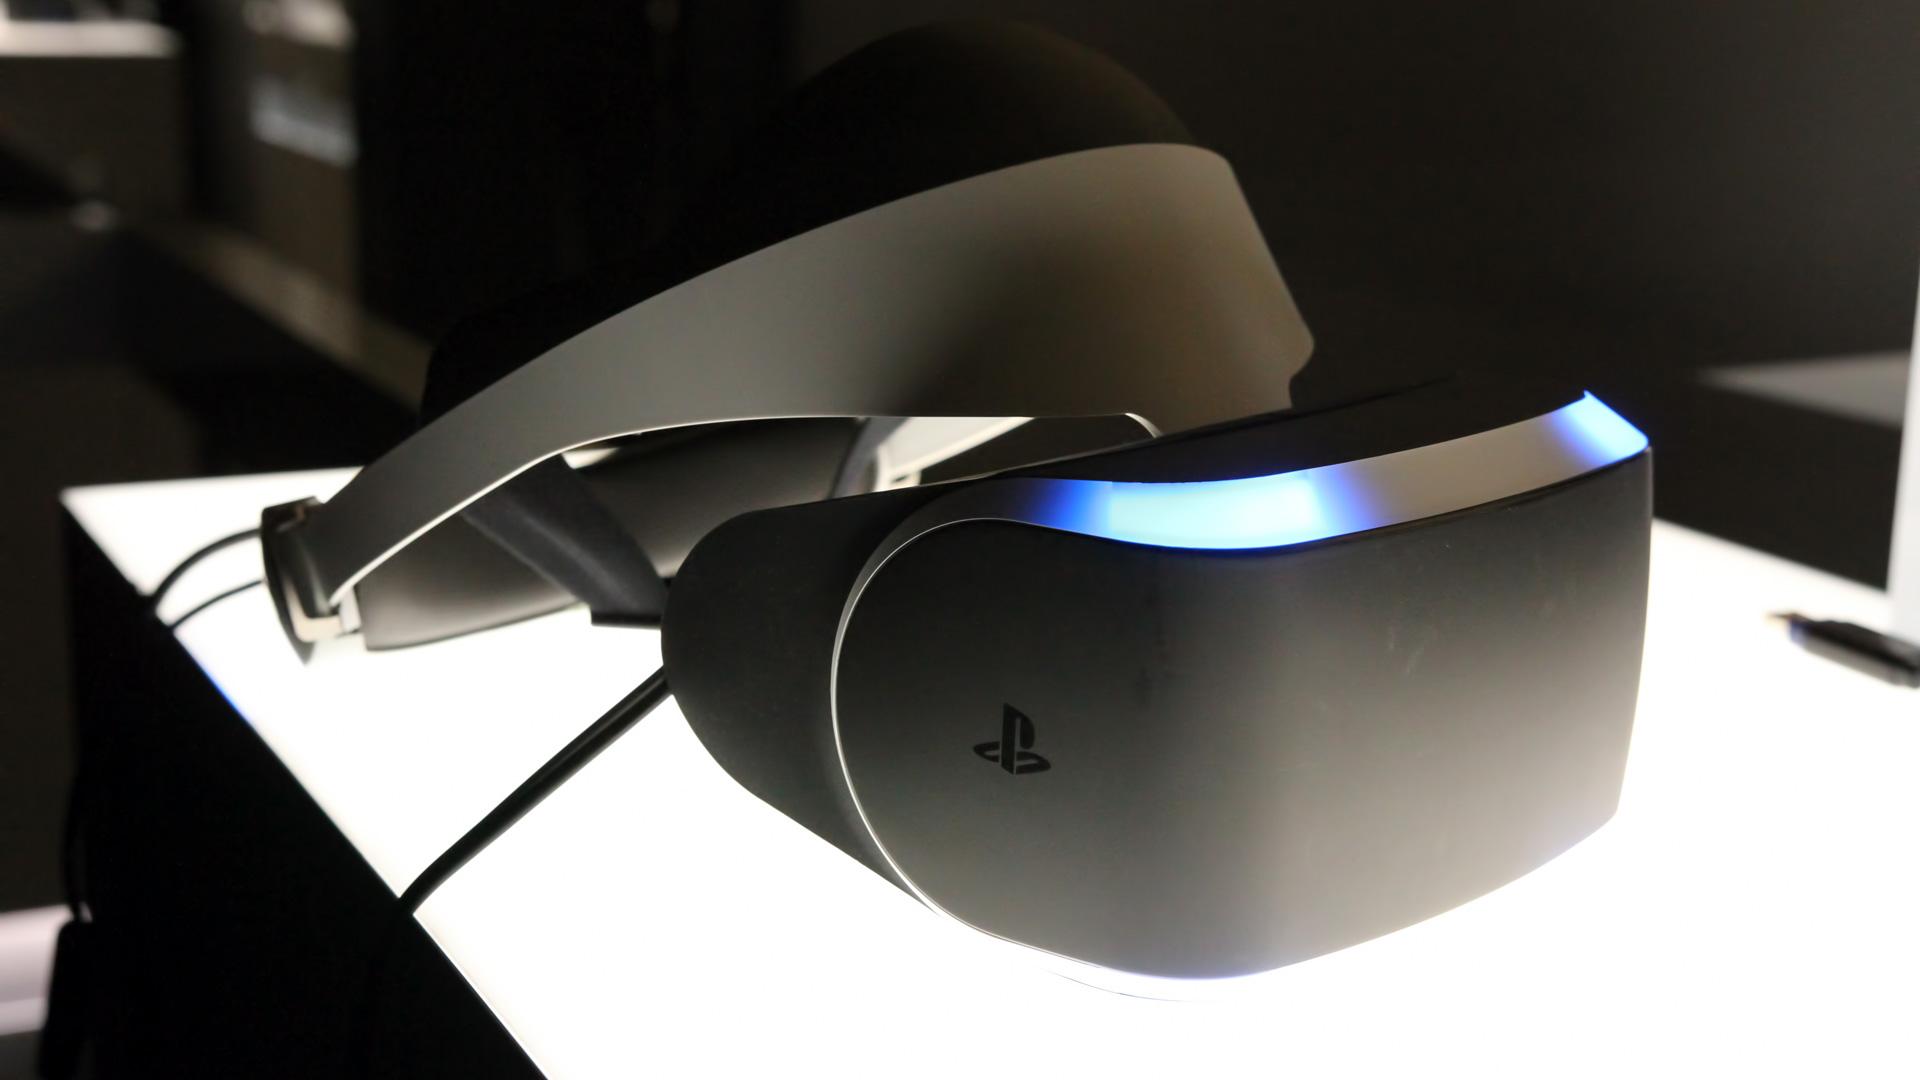 Testamos o PlayStation VR 2. Vai valer a pena?